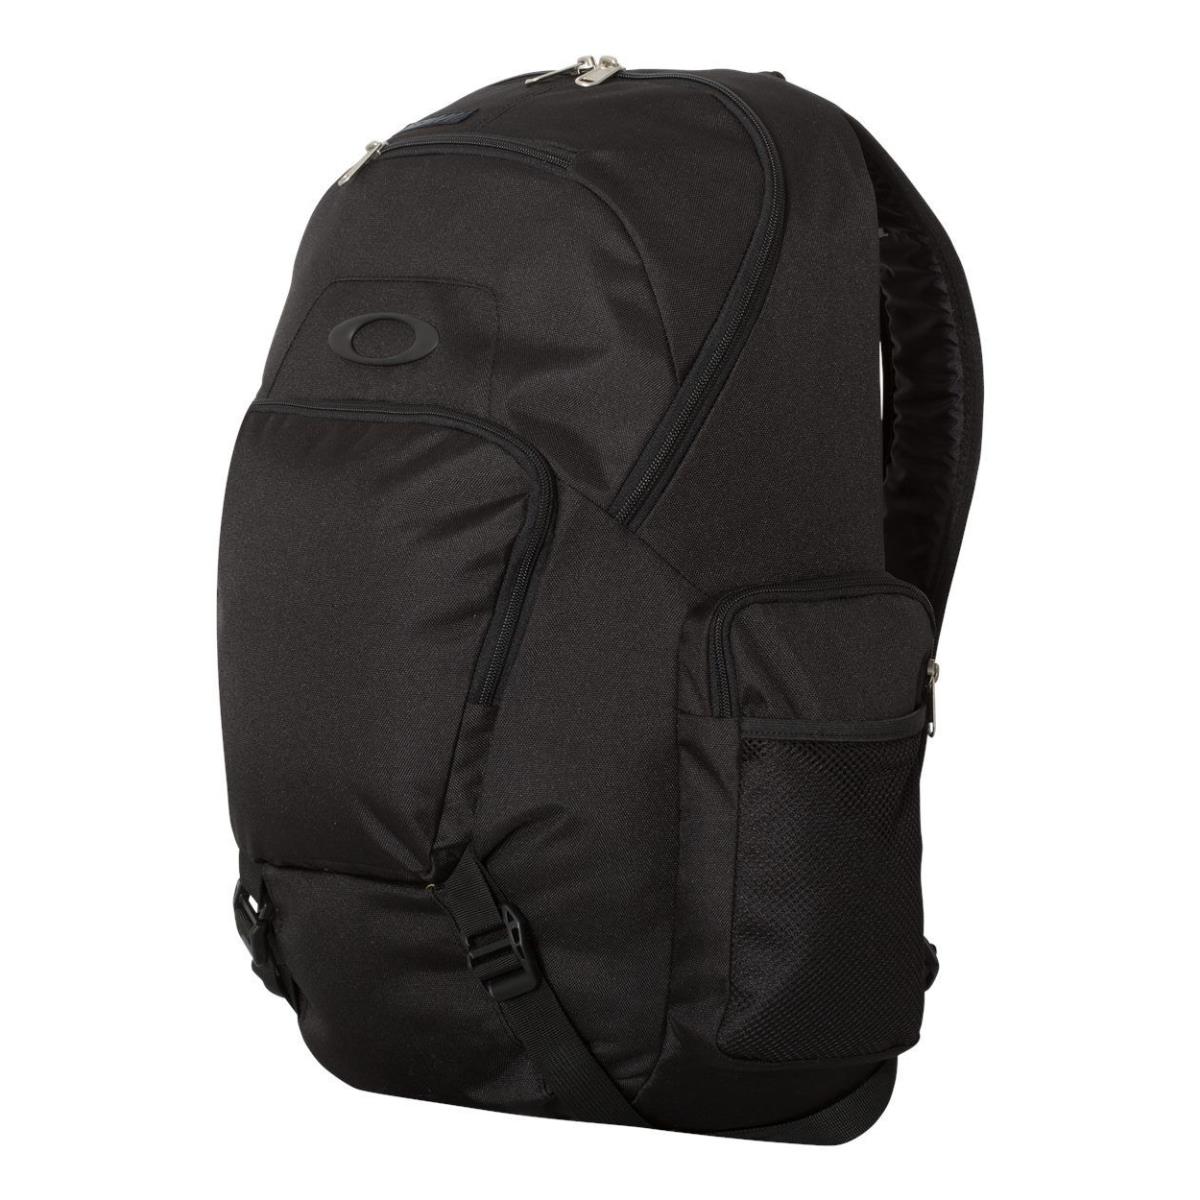 Oakley - 30L School Bag - Olive Granite Black Blade Backpack Black